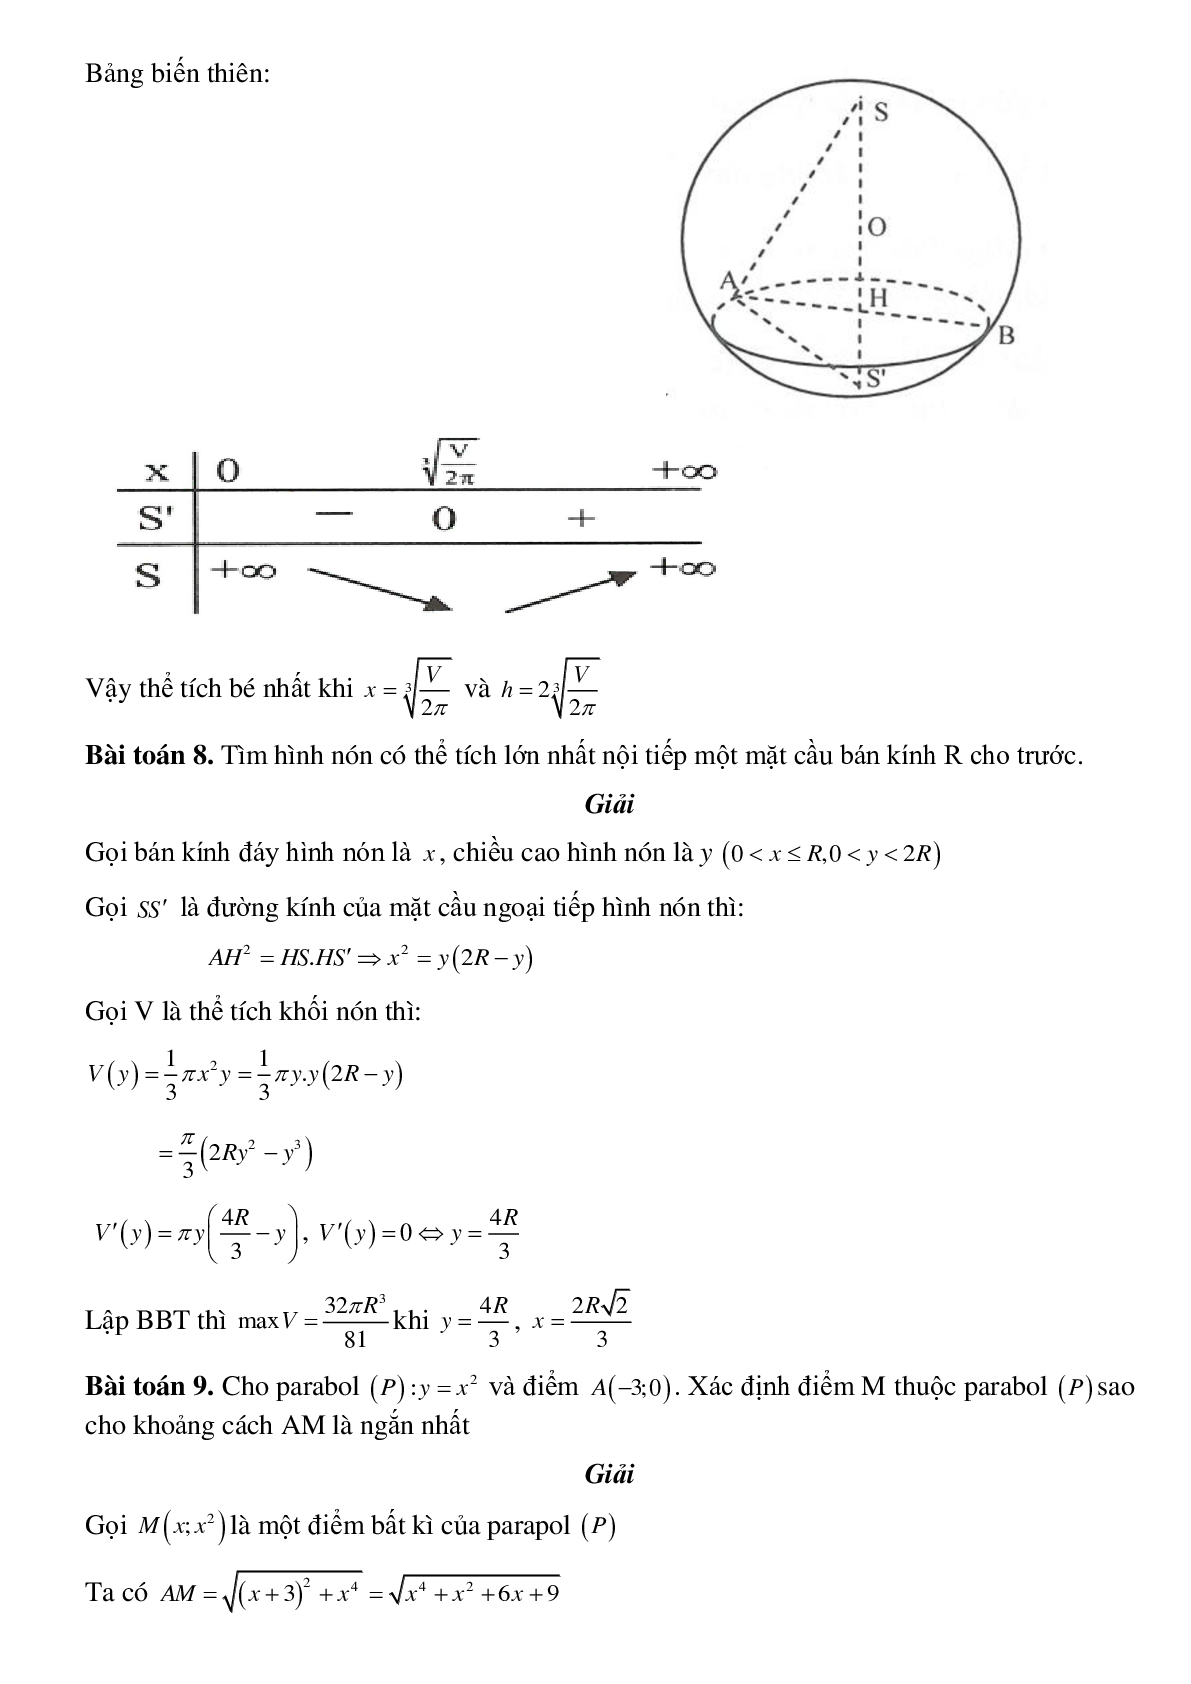 Dạng bài tập Ứng dụng thực tế của bài toán Min, Max có đáp án (trang 4)